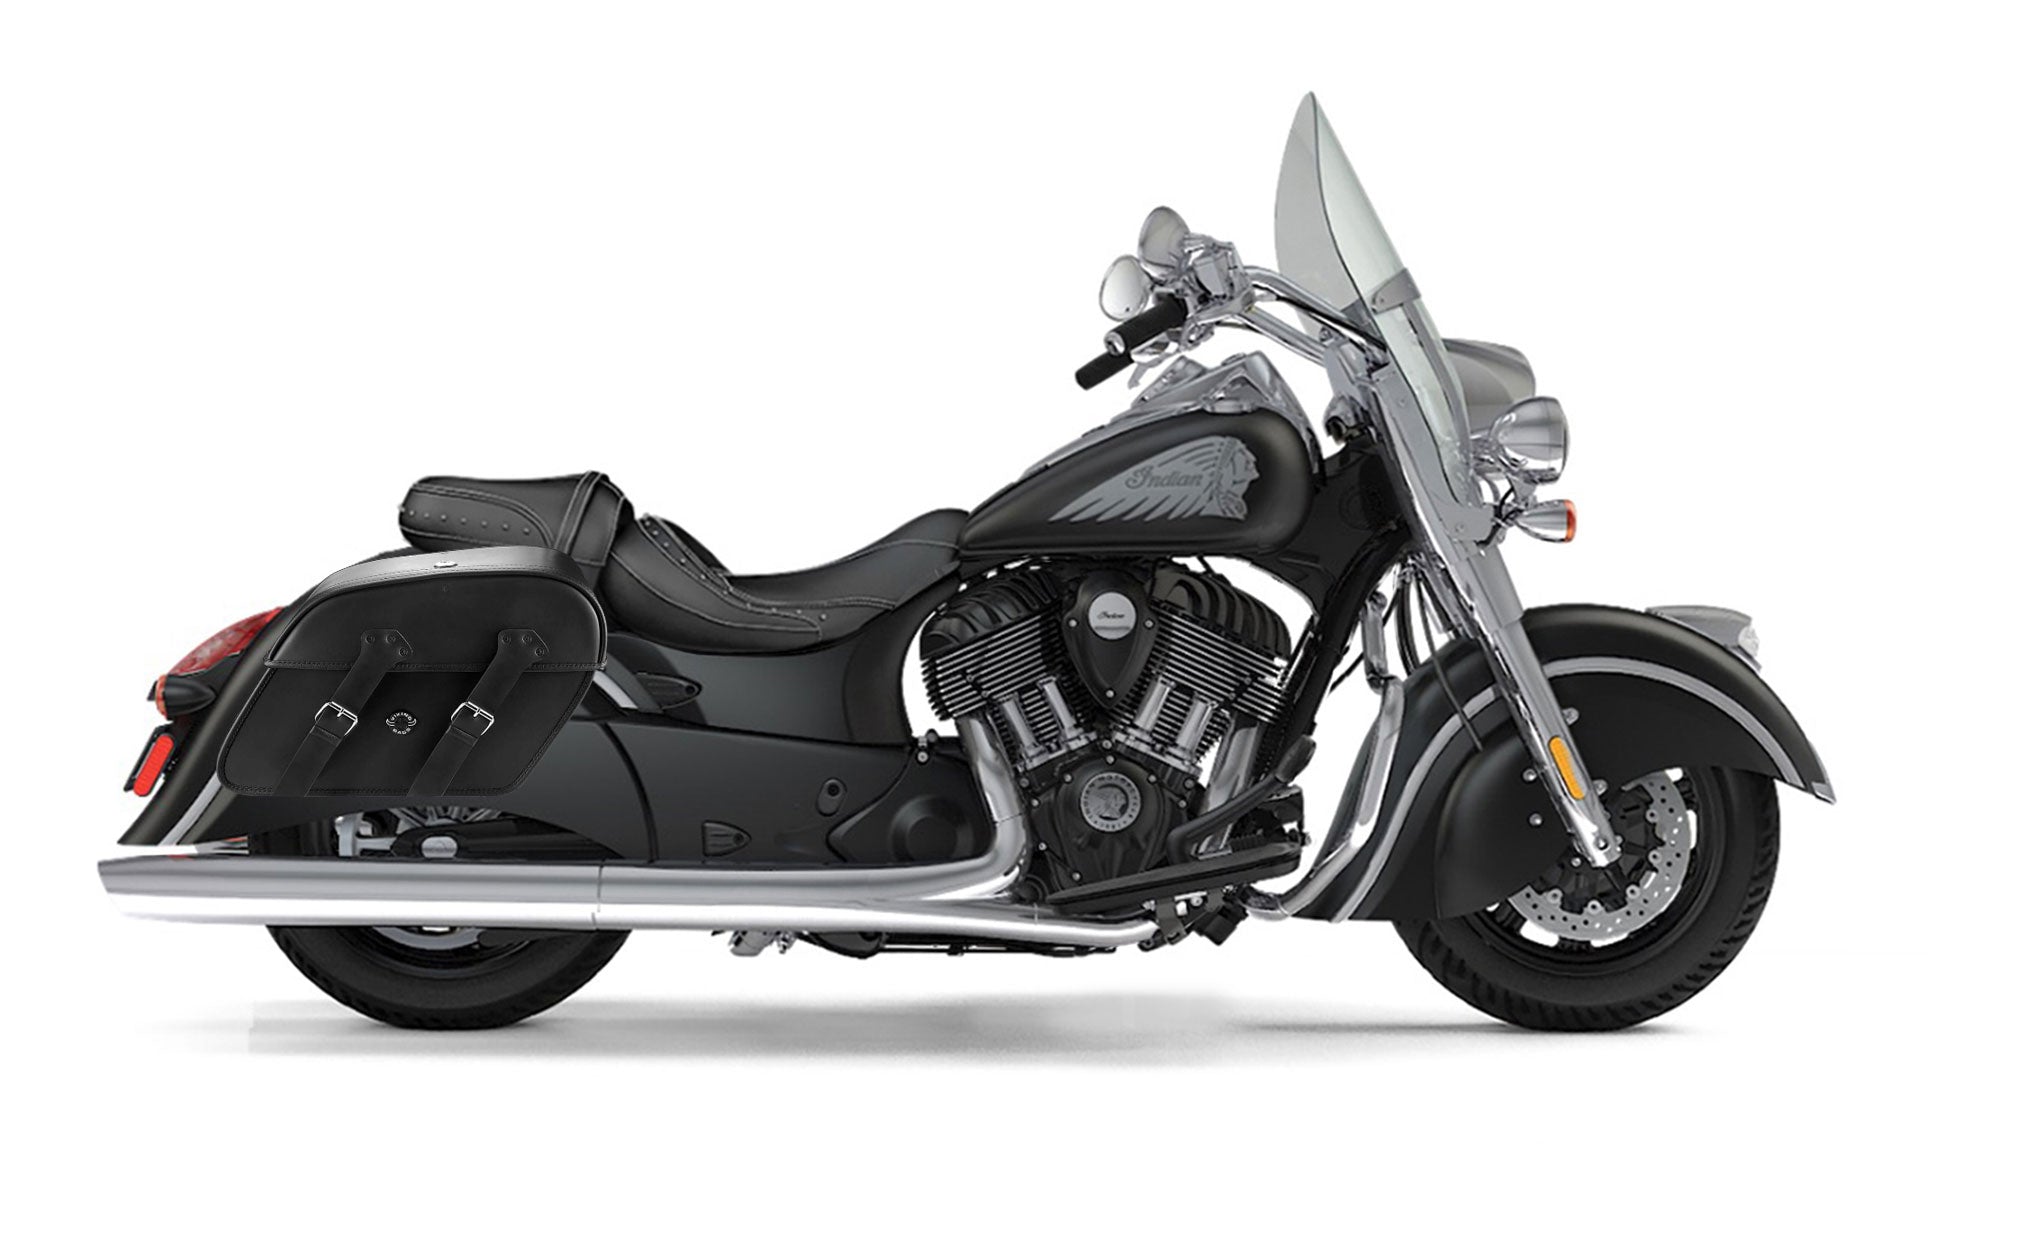 Viking Raven Extra Large Indian Springfield Leather Motorcycle Saddlebags on Bike Photo @expand